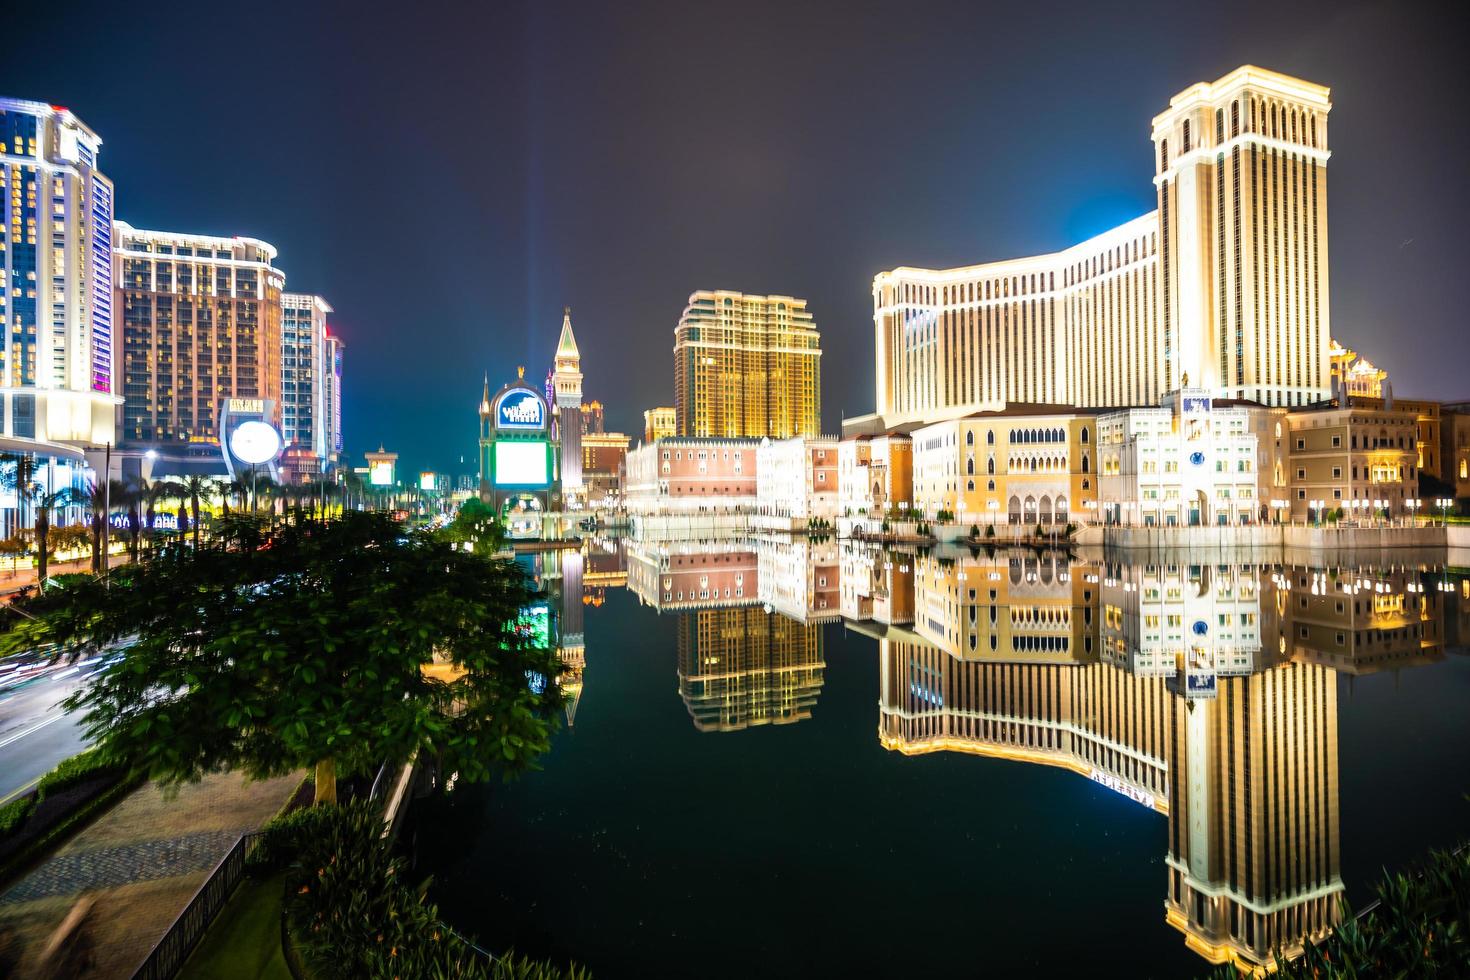 Veneciano y otro hotel resort y casino en la ciudad de Macao, China en la noche foto